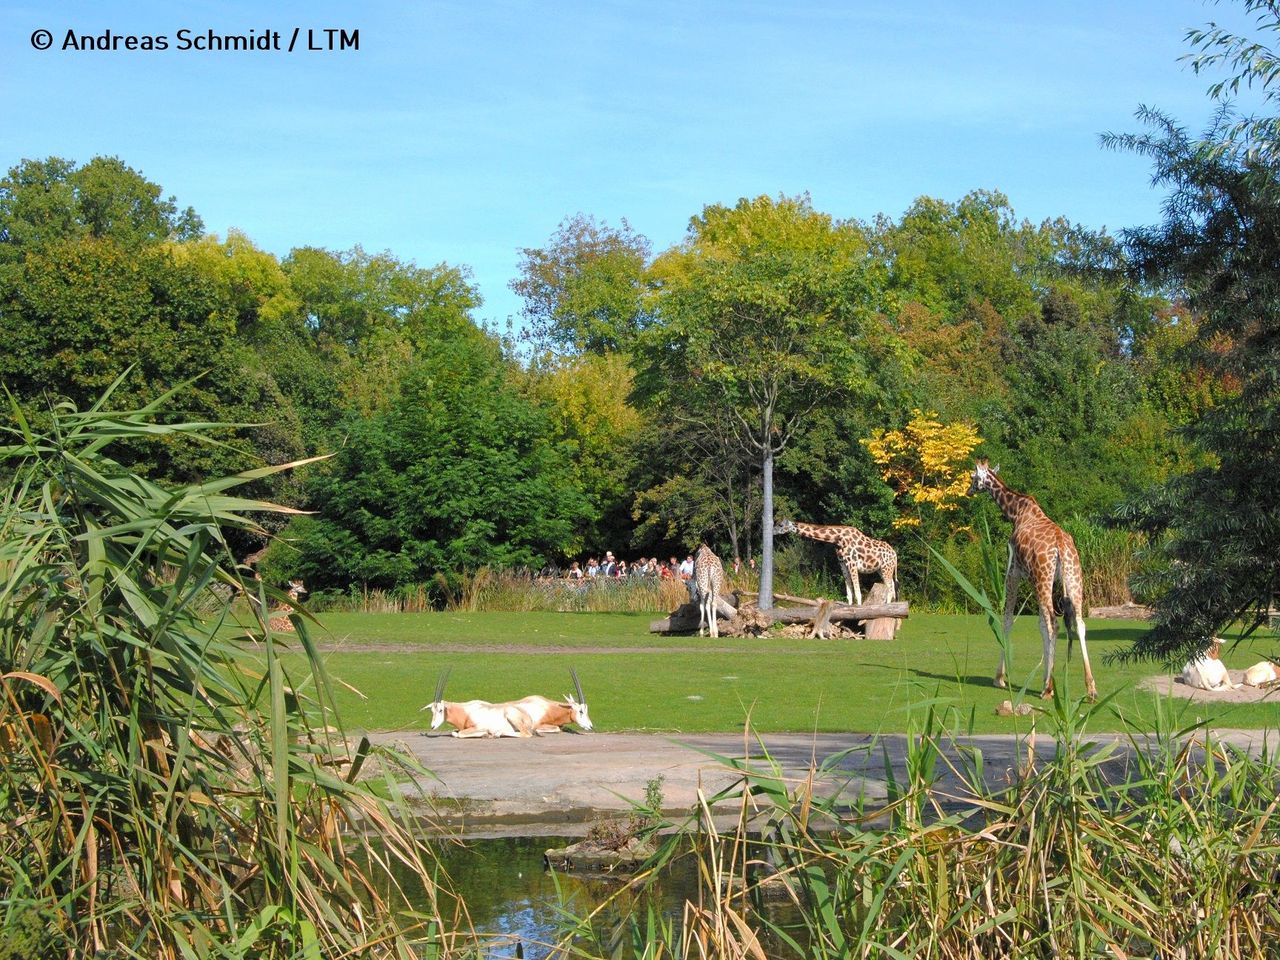 LOGINN & enjoy @ Zoo Leipzig! 3 Tage Tierischer Spaß